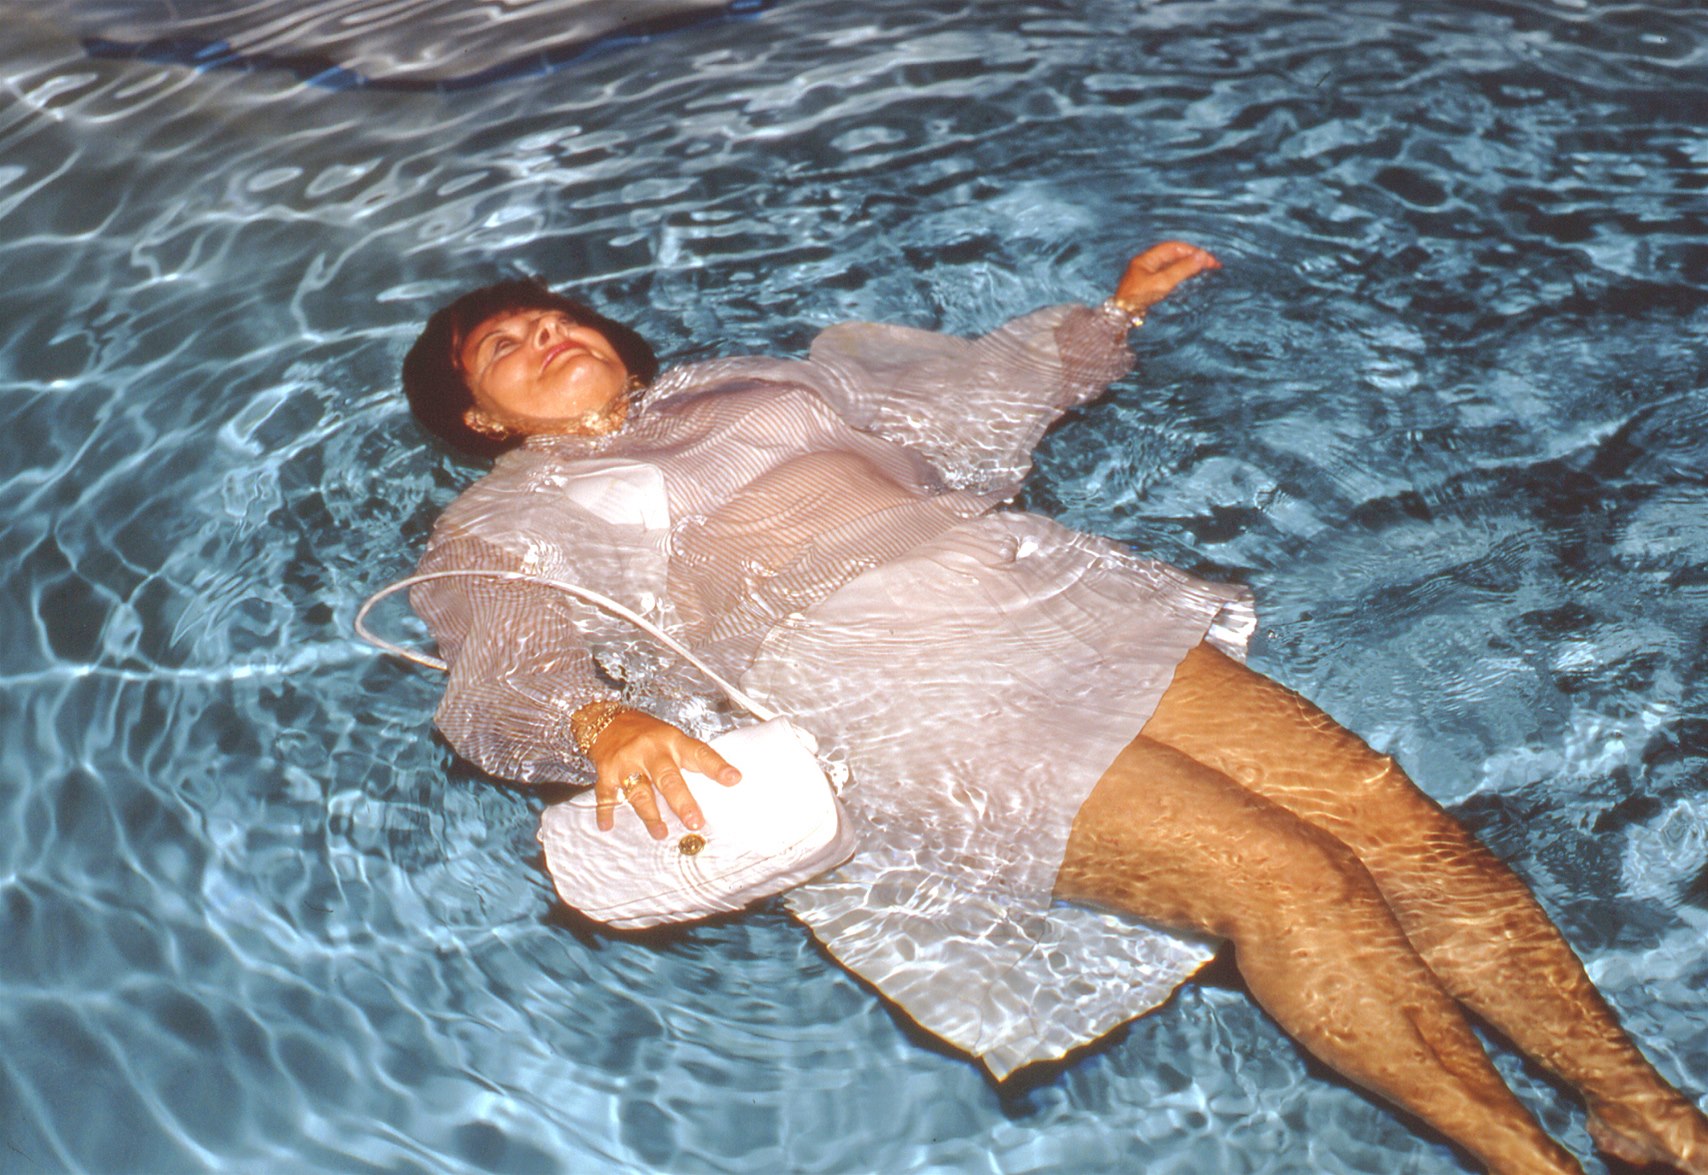 Тетка моется. Купание в одежде в бассейне. Толстая женщина в воде. Купаться в одежде. Купаться в воде.